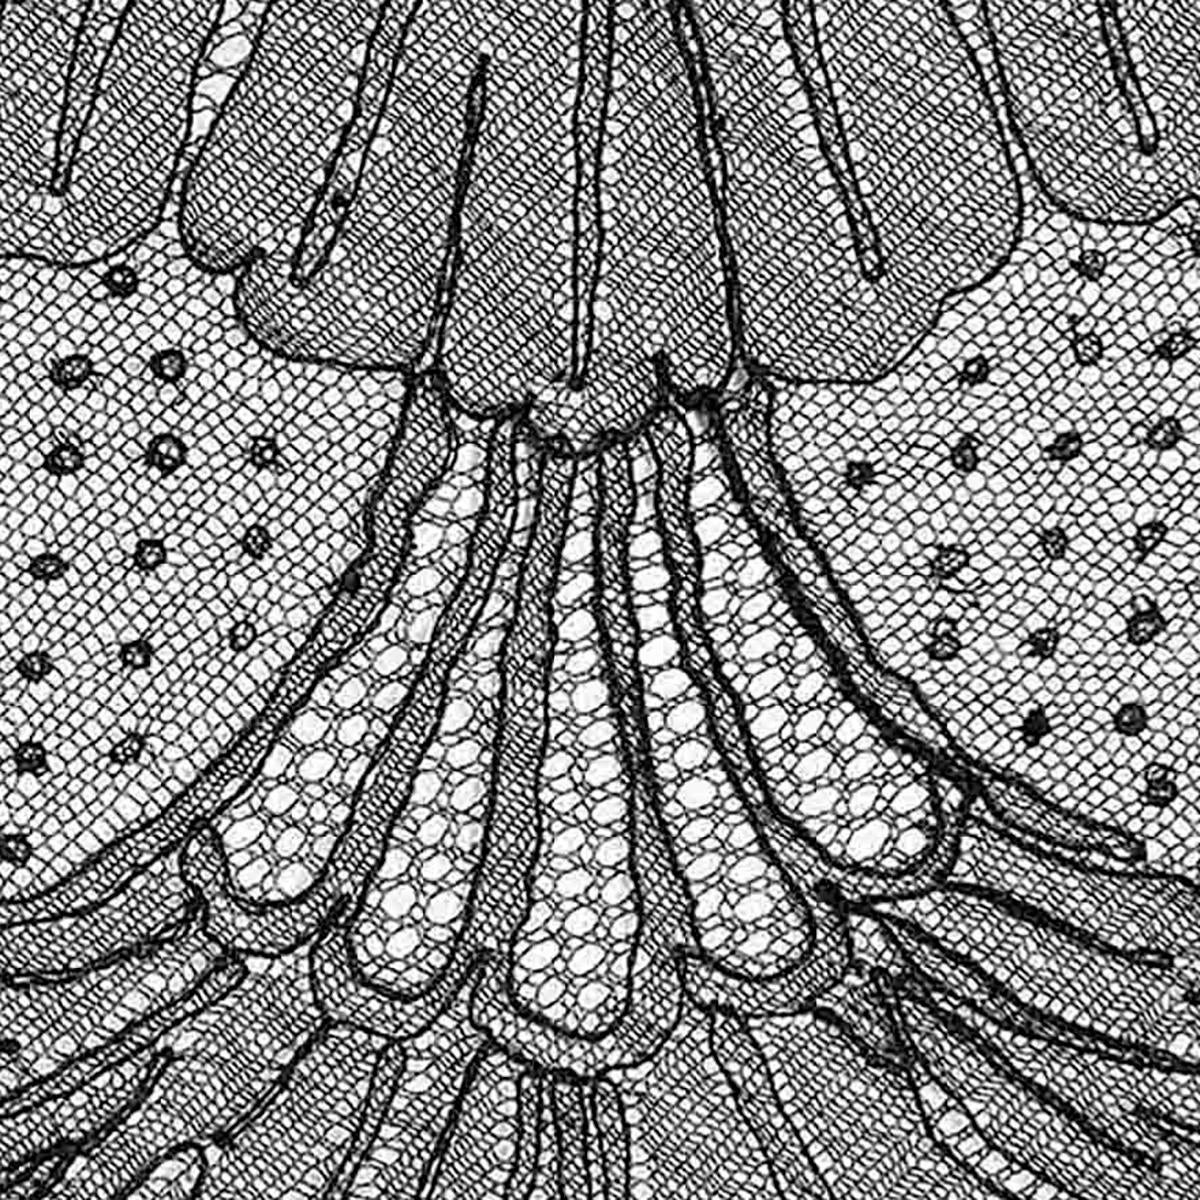 Black 1920s Vintage Dress - Floral Lace - Side Split + V-Neck Detail  For Sale